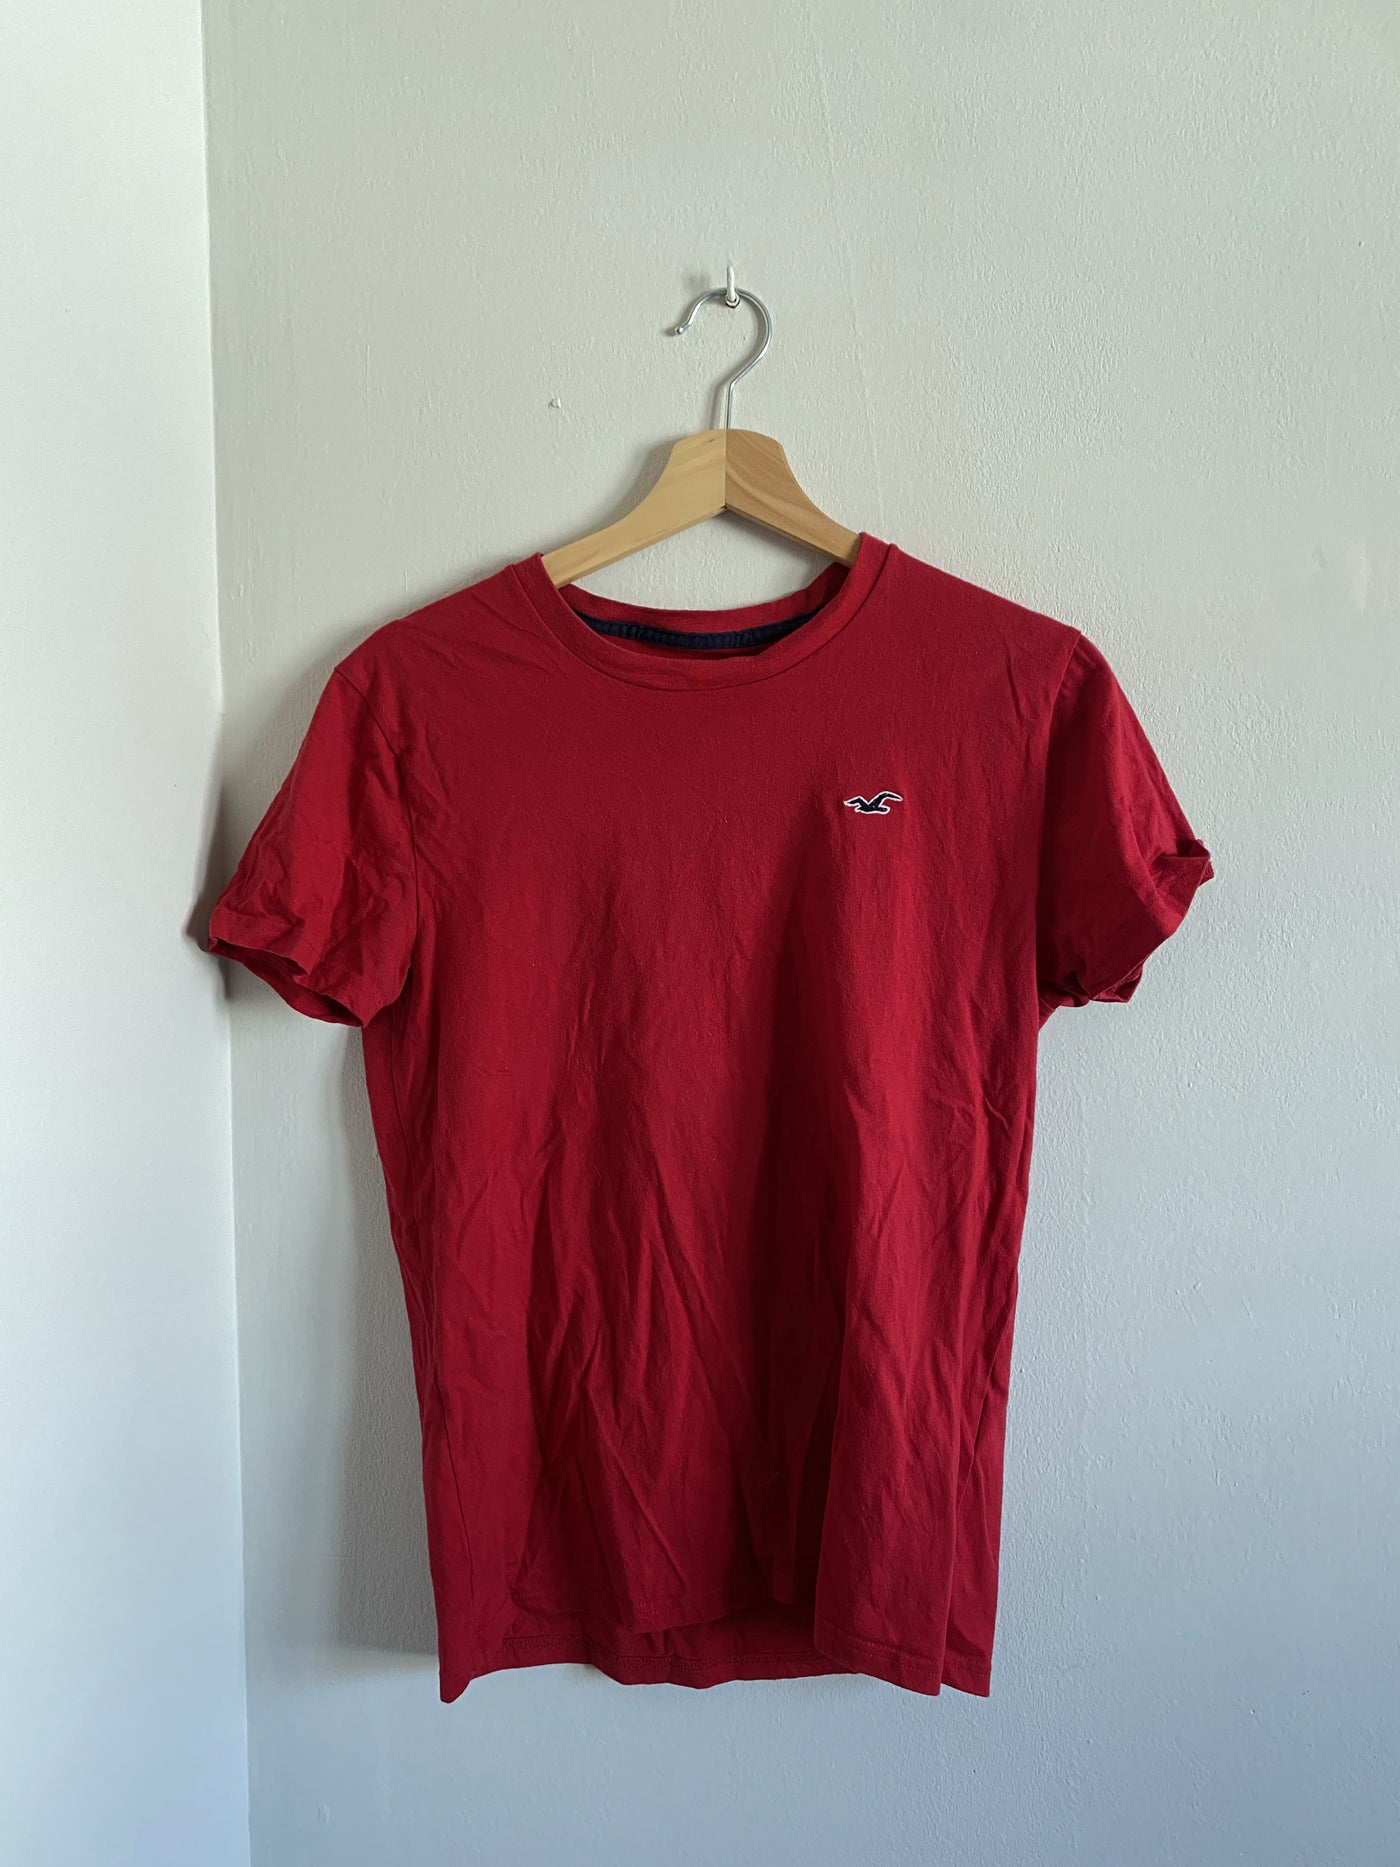 Camiseta de mano – it.closet